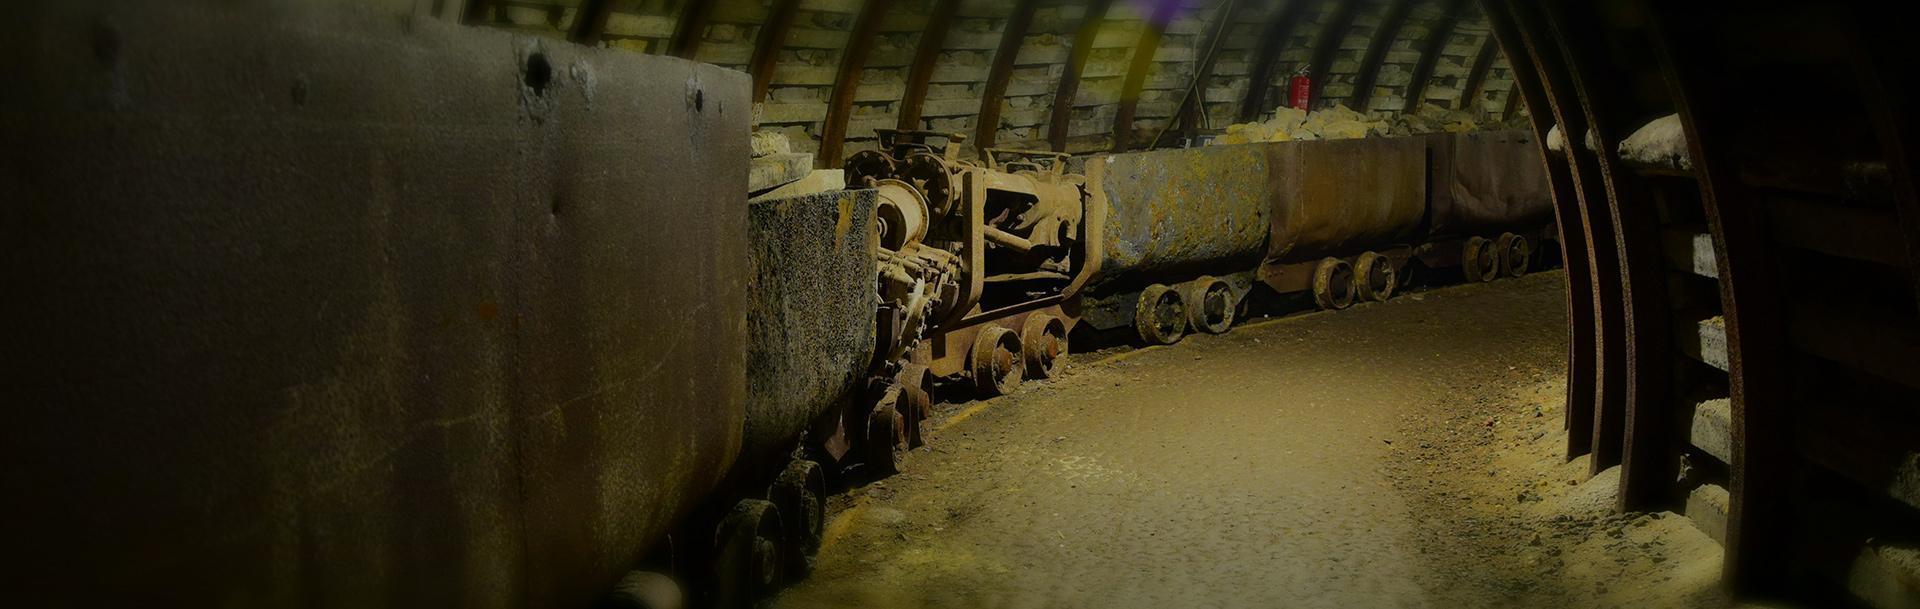 tunel, wagoniki z wyrobiskiem - Slider 3